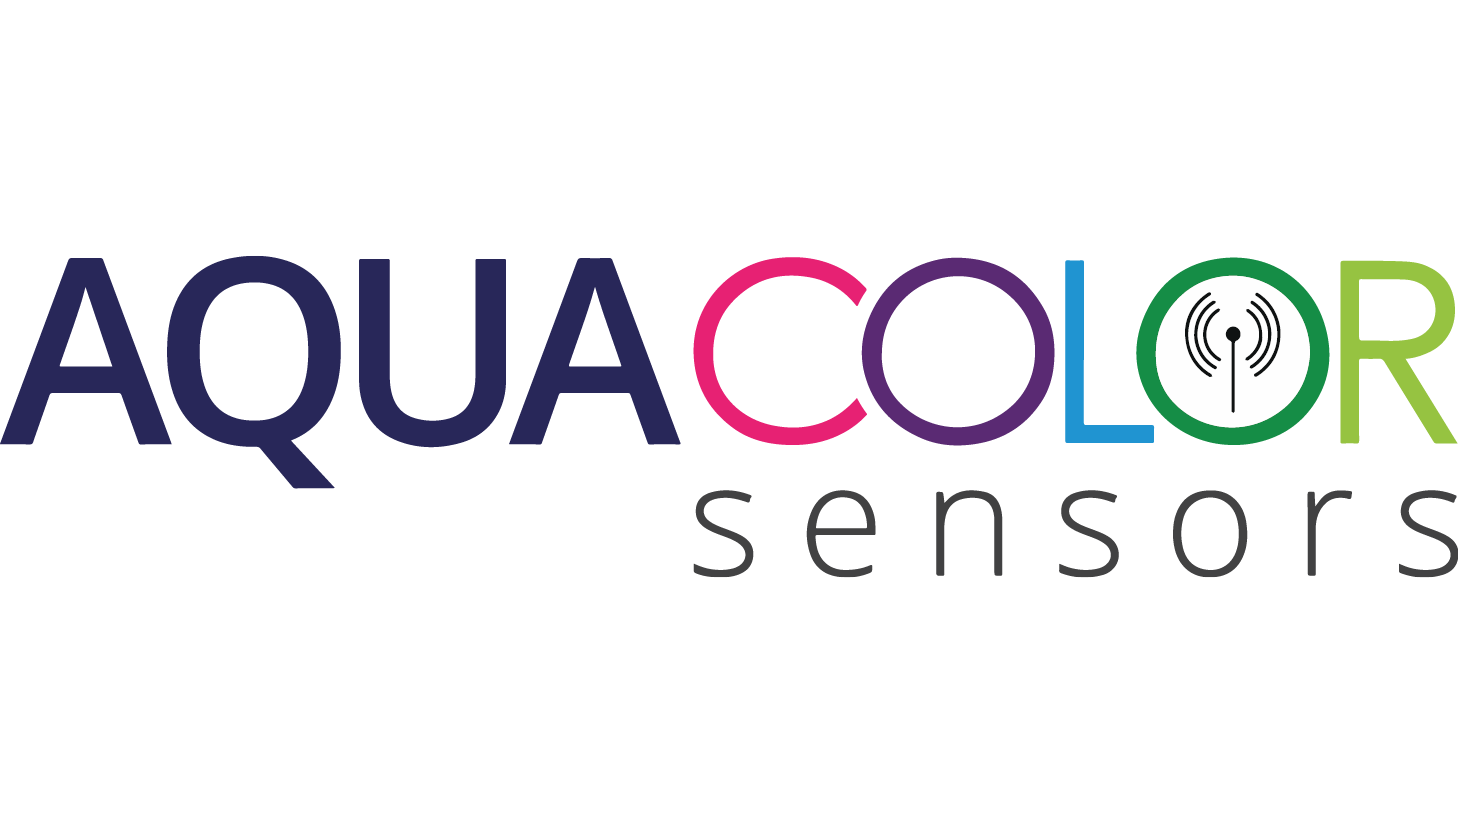 Aquacolorsensors 02